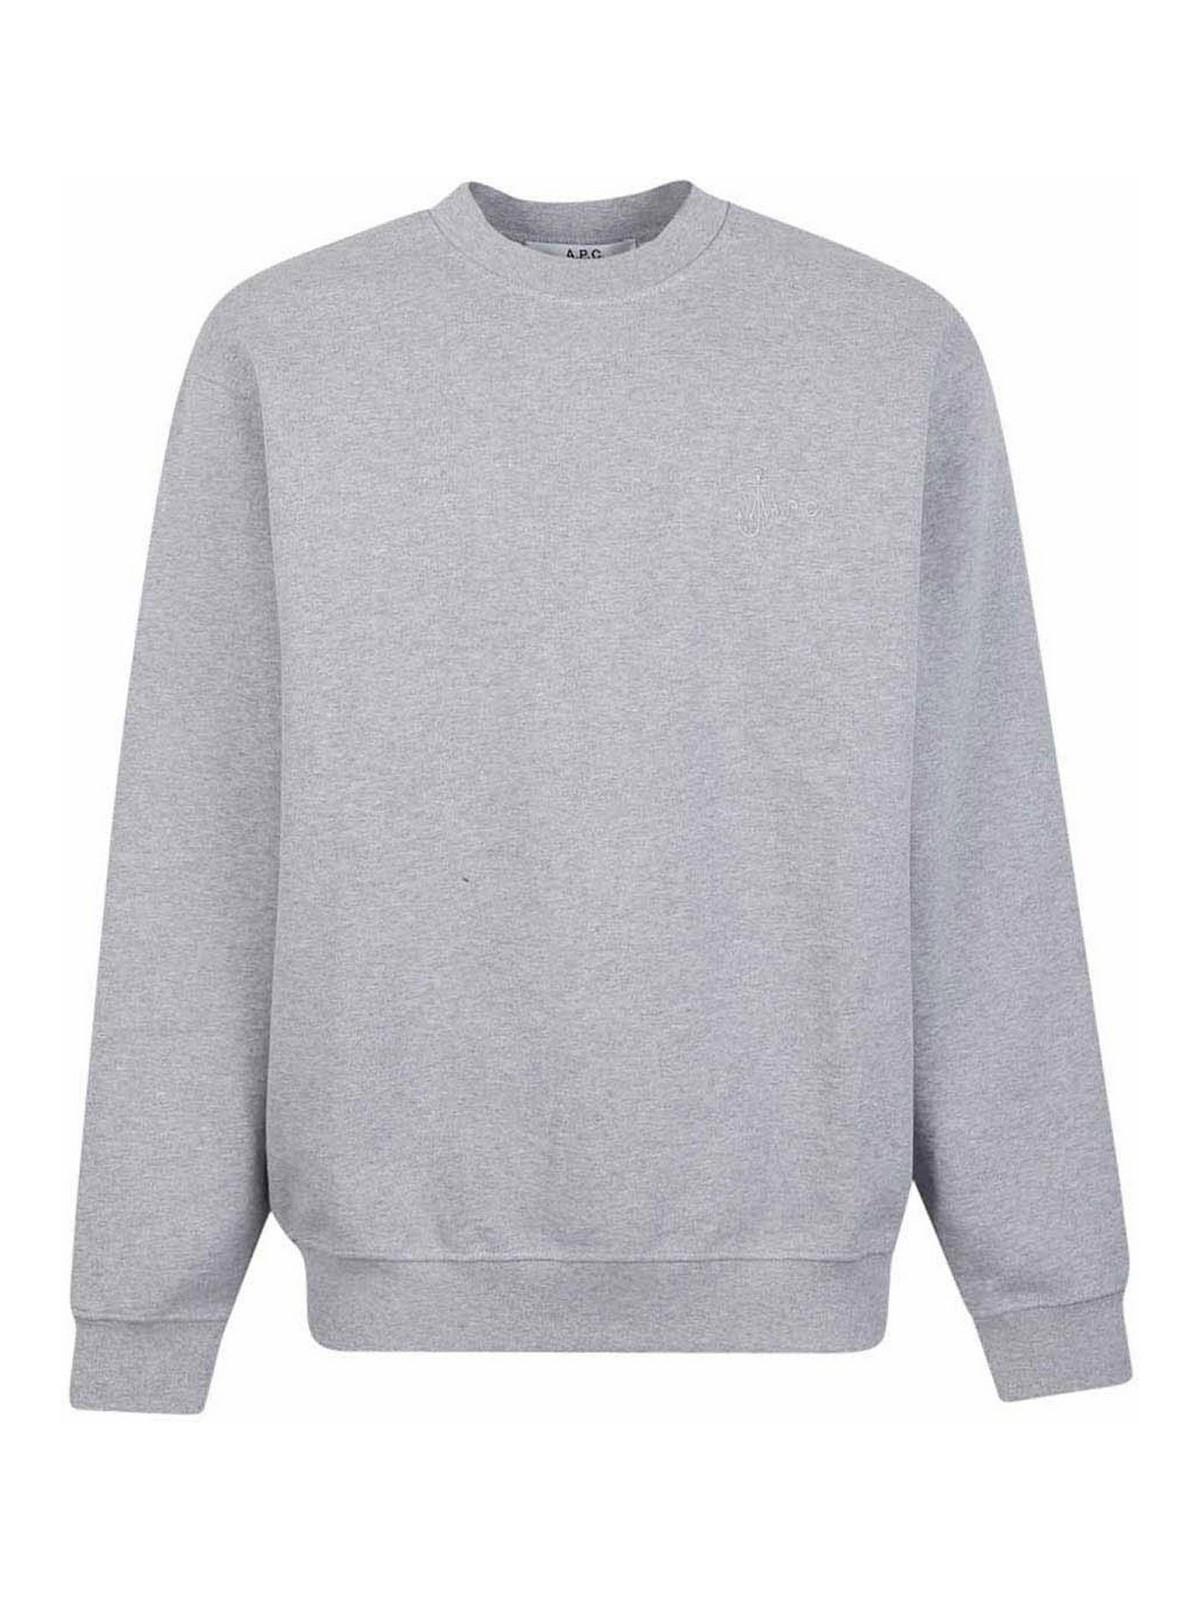 Apc Logo Cotton Sweatshirt In Grey